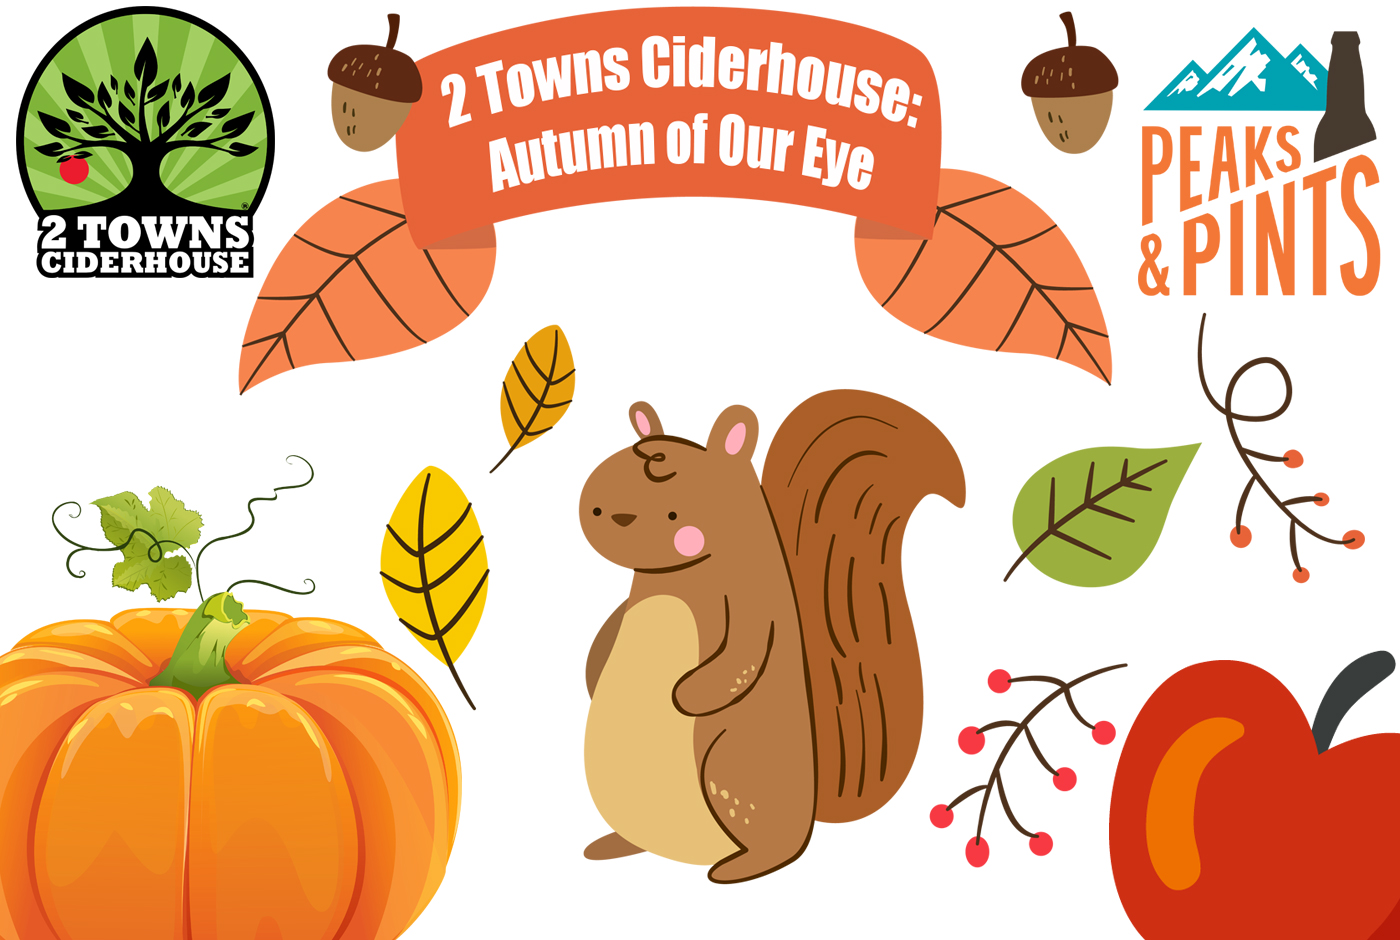 2-Towns-Ciderhouse-Autumn-Of-Our-Eye-calendar